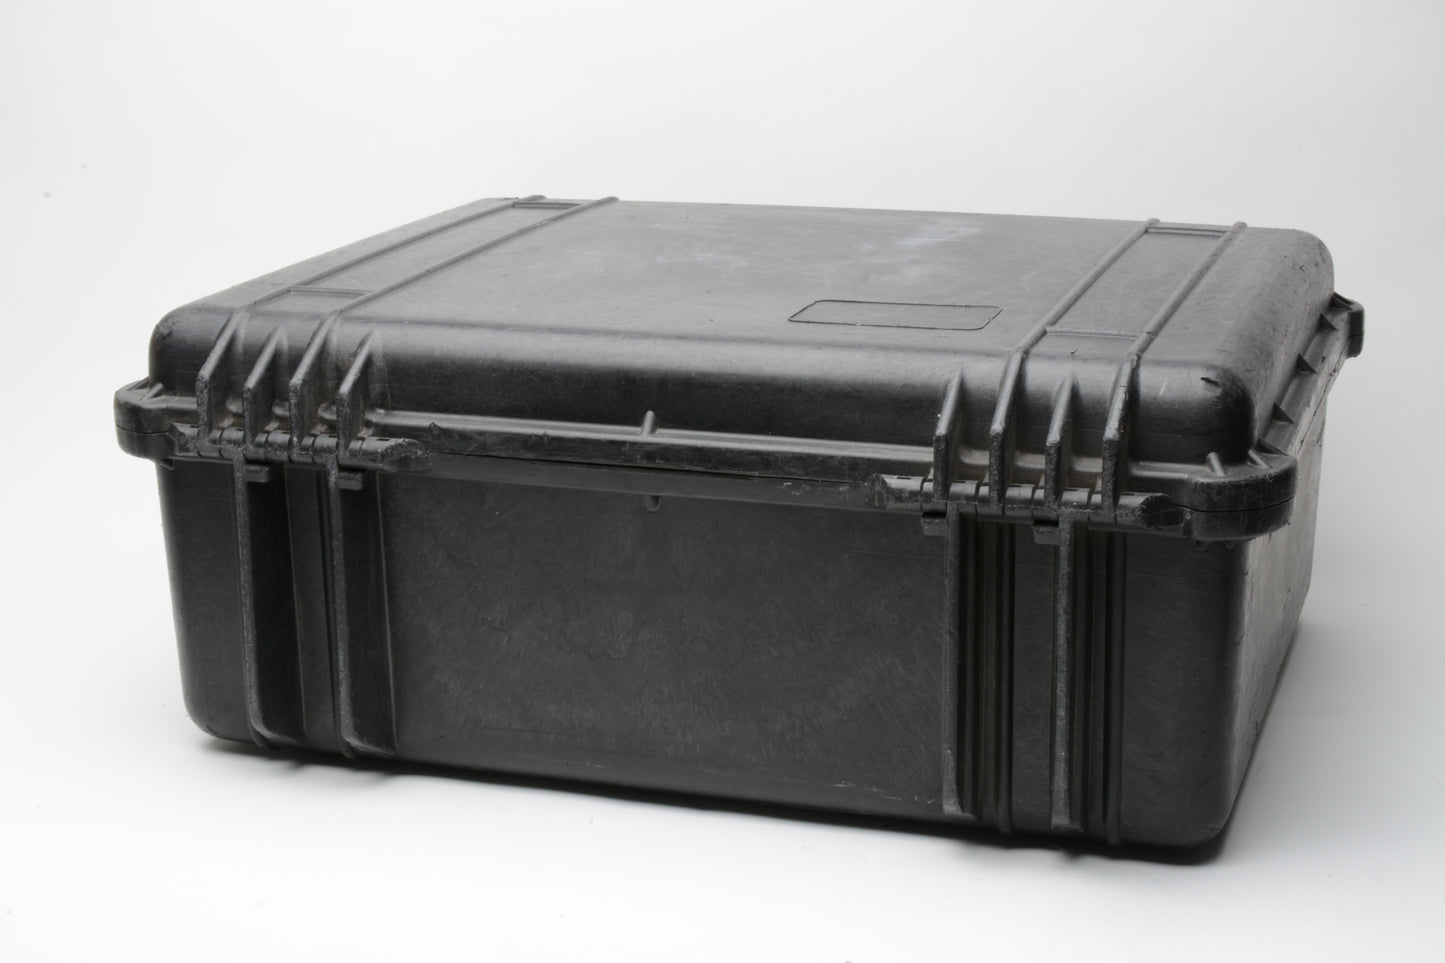 Pelican Large Hard Case With Cut Foam Insert ~19" x 15" x 6.5" Waterproof